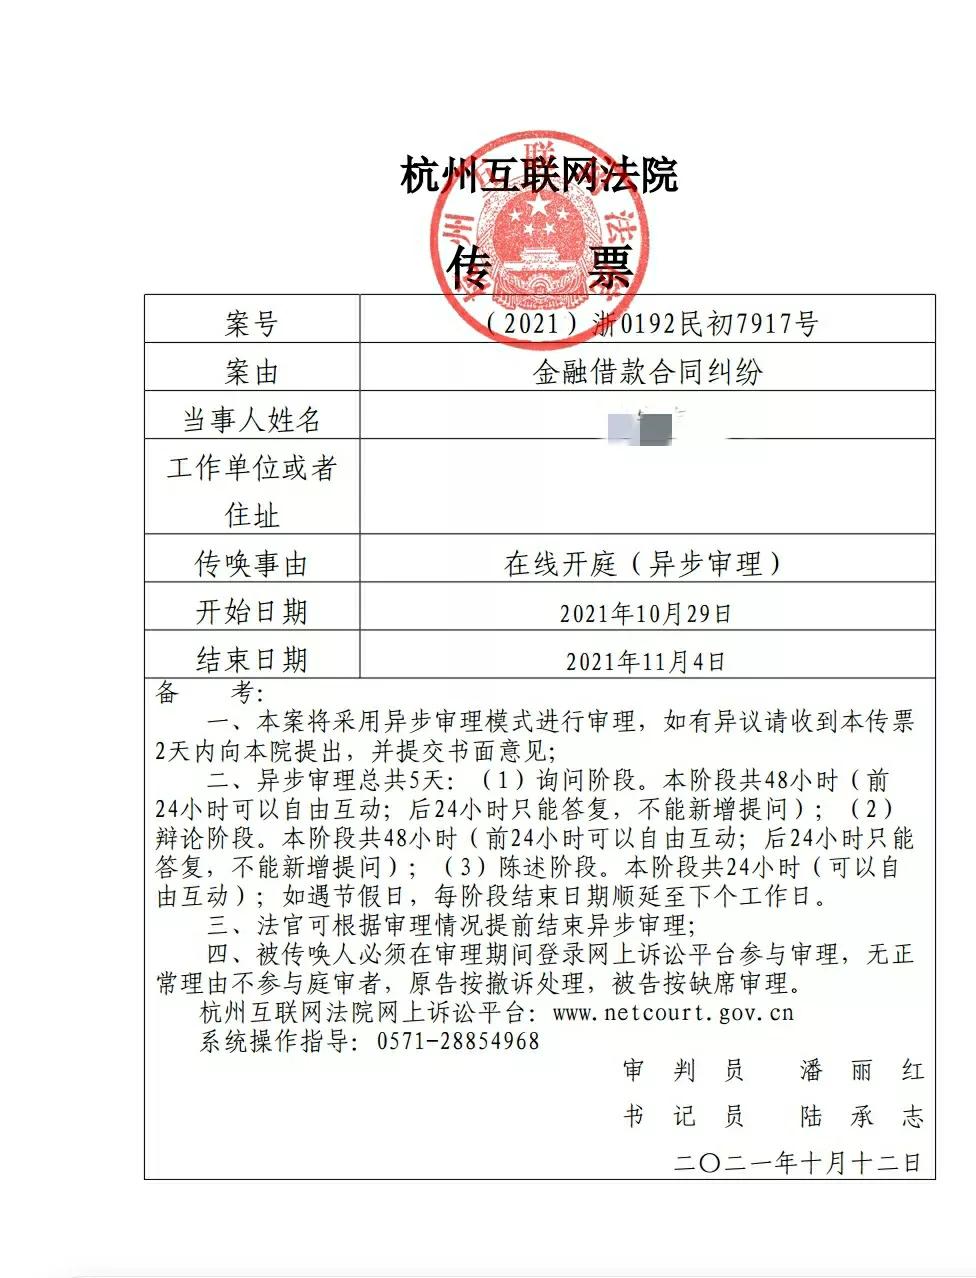 网贷逾期，被起诉到杭州互联网法院的第26天